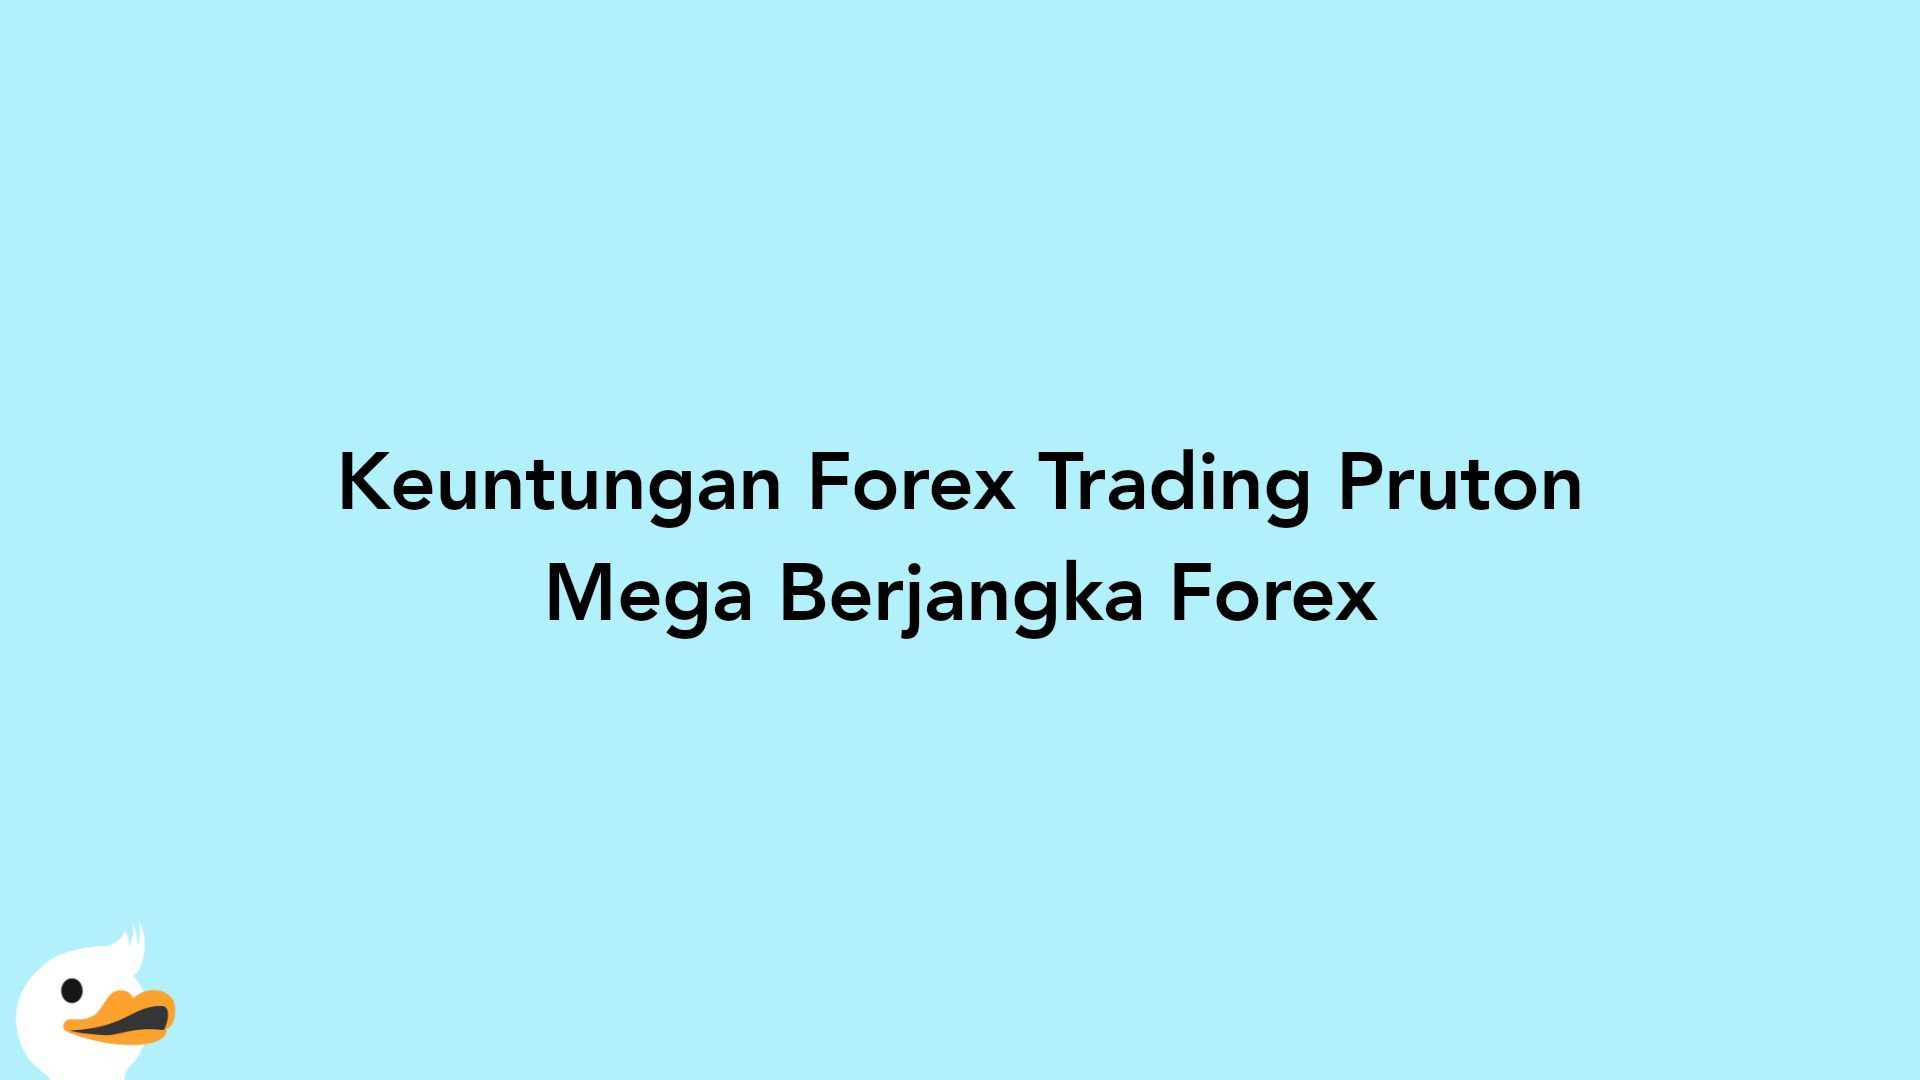 Keuntungan Forex Trading Pruton Mega Berjangka Forex